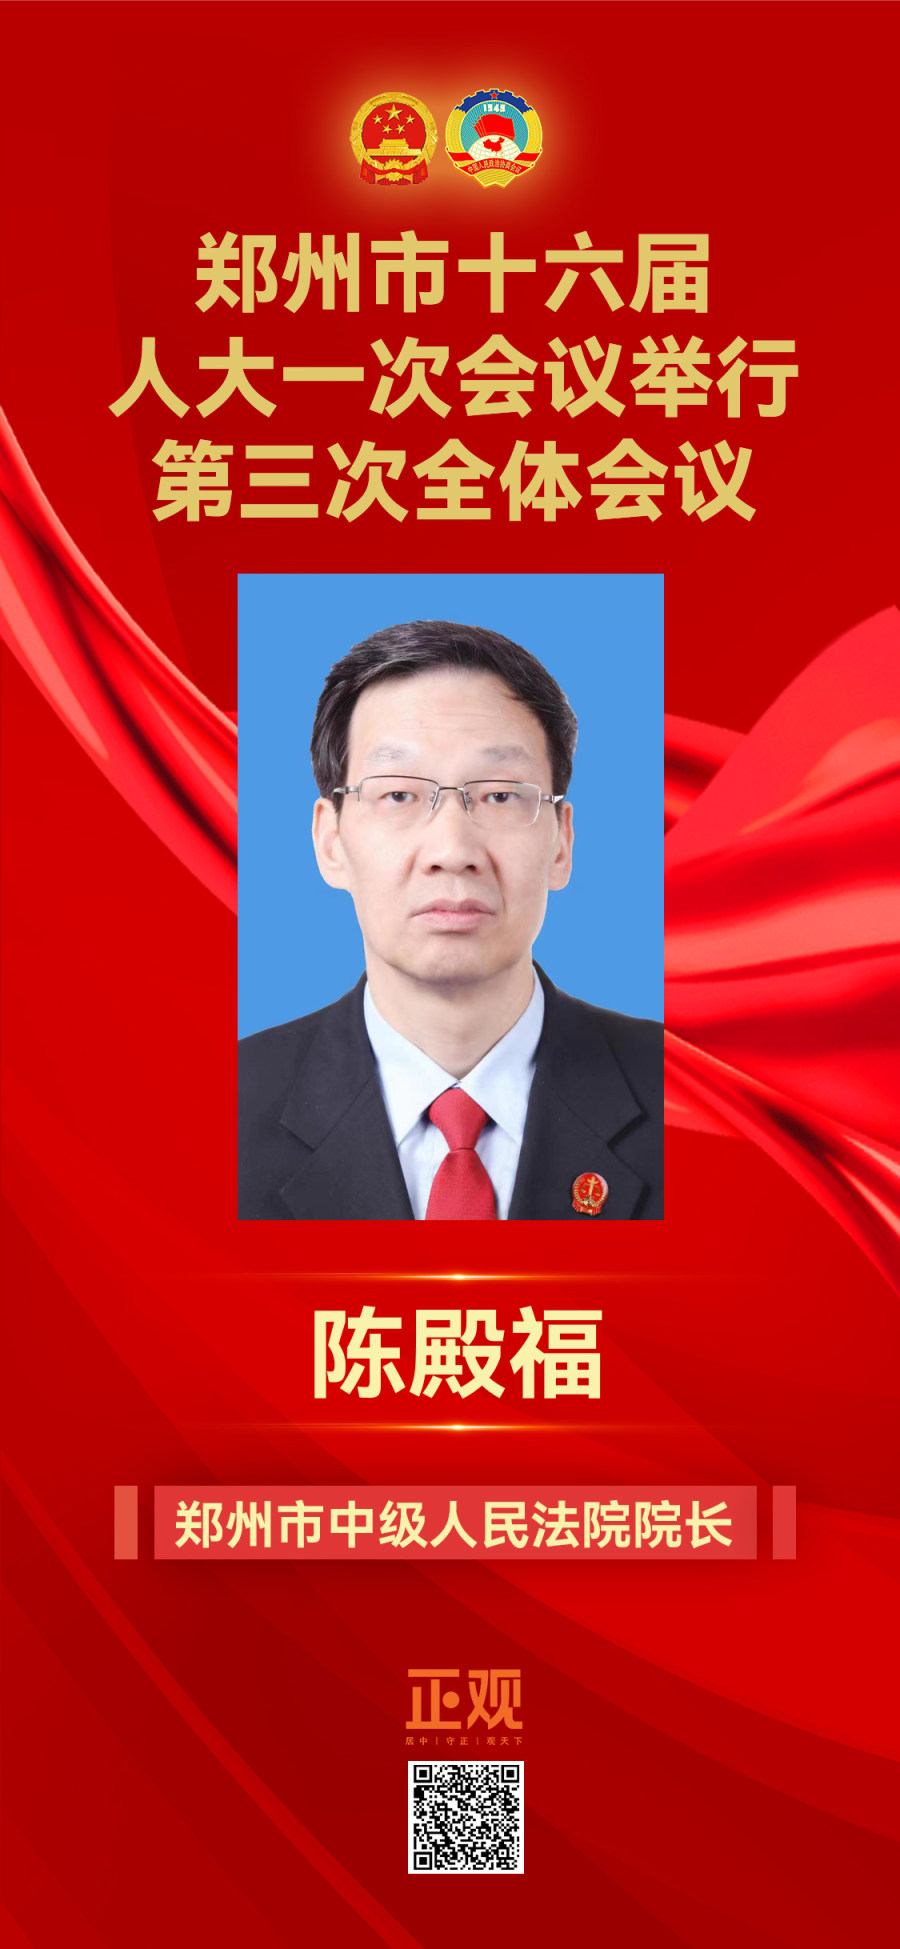 陳殿福當選鄭州市中級人民法院院長